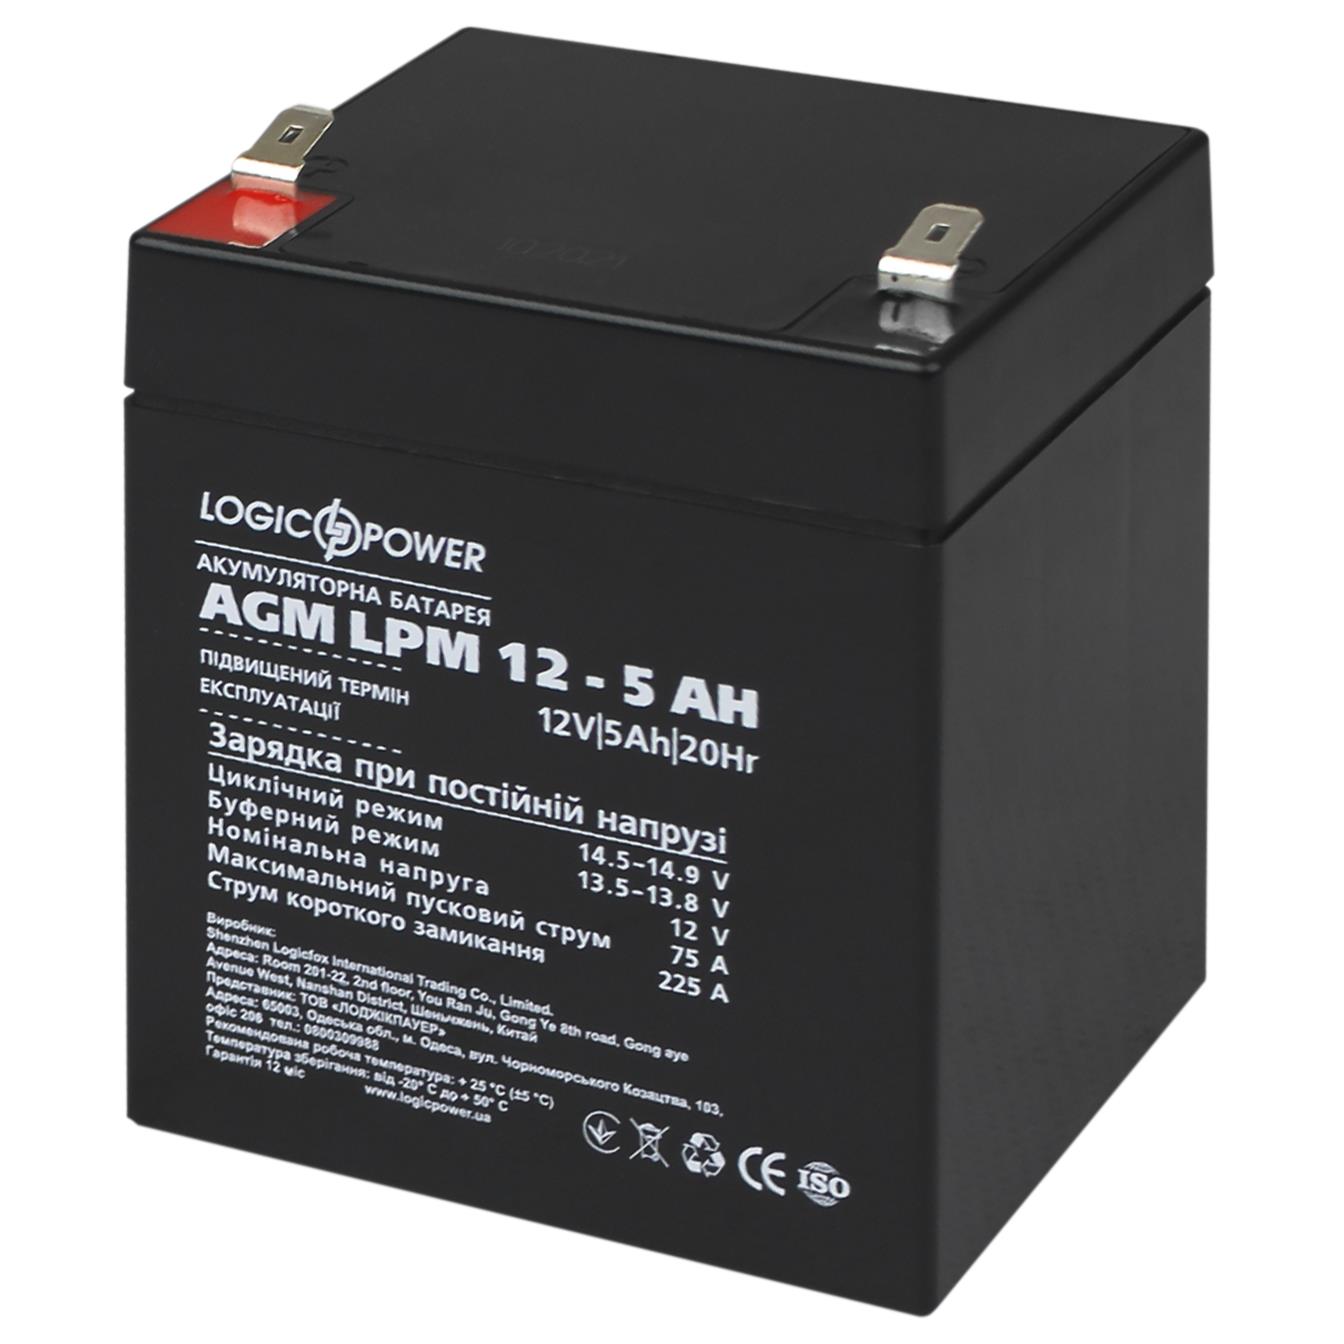 Отзывы аккумулятор свинцово-кислотный agm LogicPower AGM LPM 12V - 5 Ah (3861) в Украине